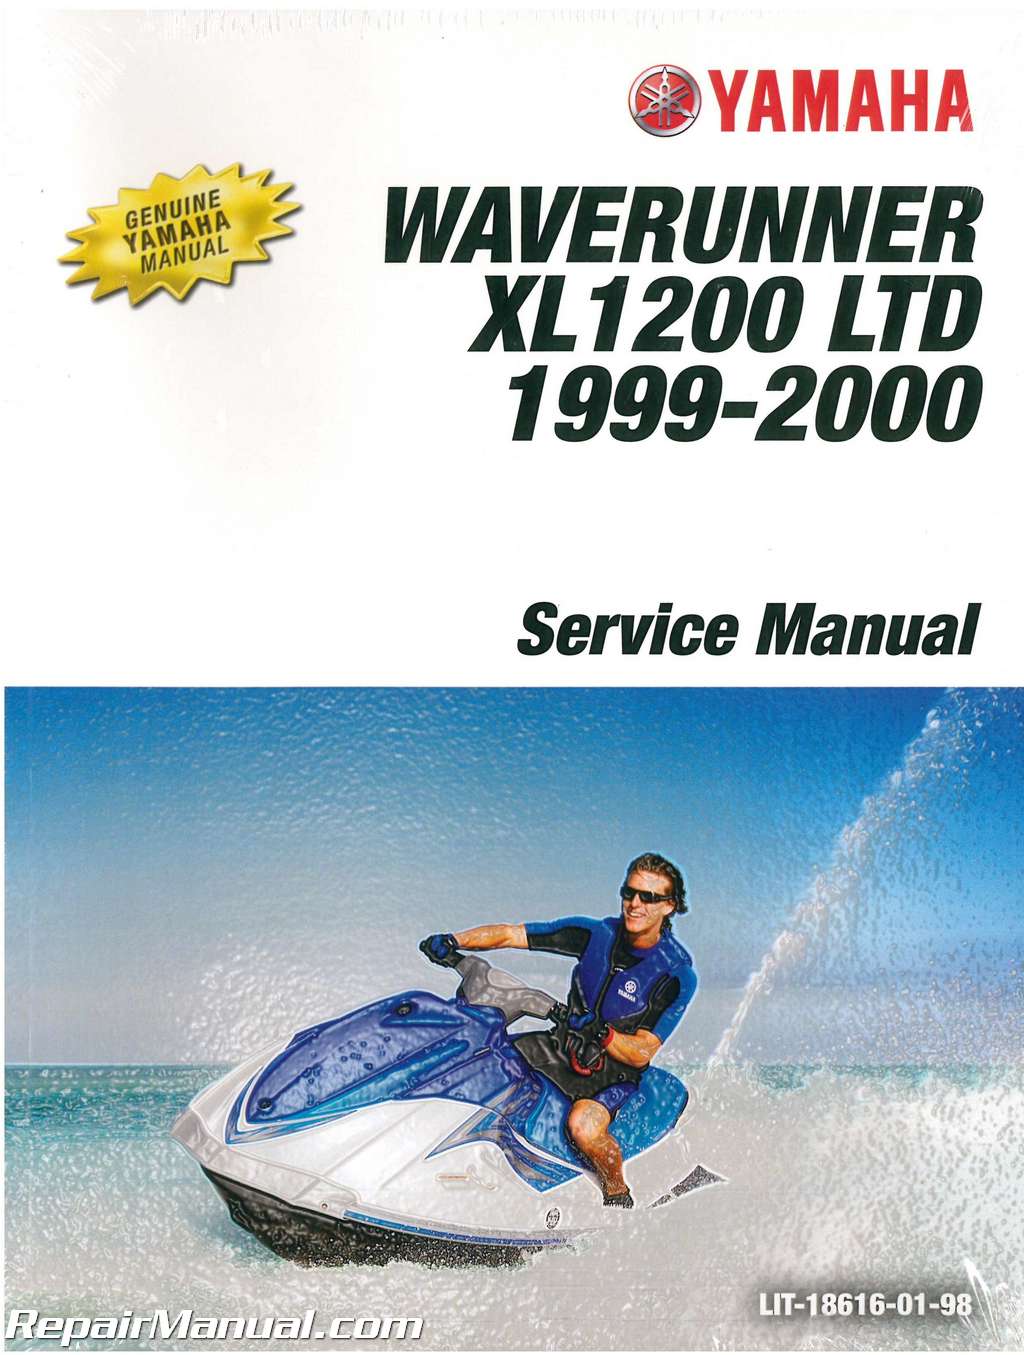 19992000 Yamaha XL1200LTD Waverunner Service Manual